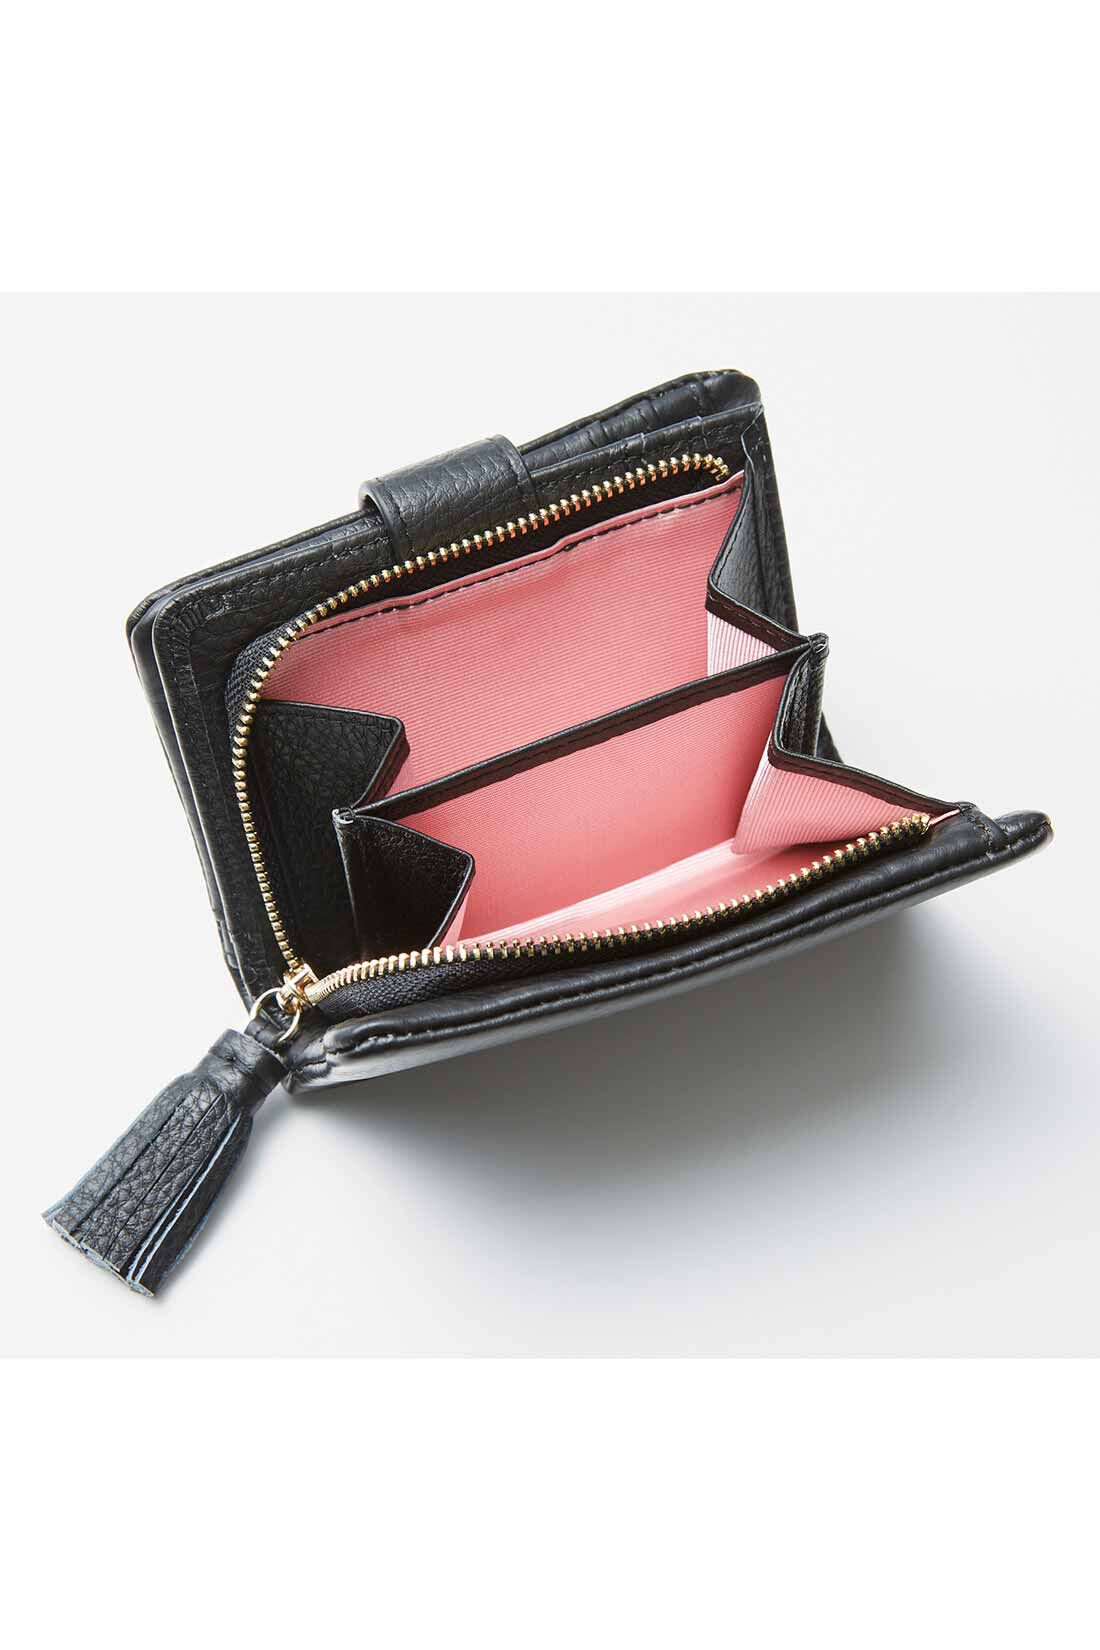 イディット|IEDIT[イディット]　くったり本革素材できれいめ二つ折り財布〈ブラック〉|大きく開くサイドまち付きで、小銭の出し入れもらくらく。内側は気分が上がるカラーに。